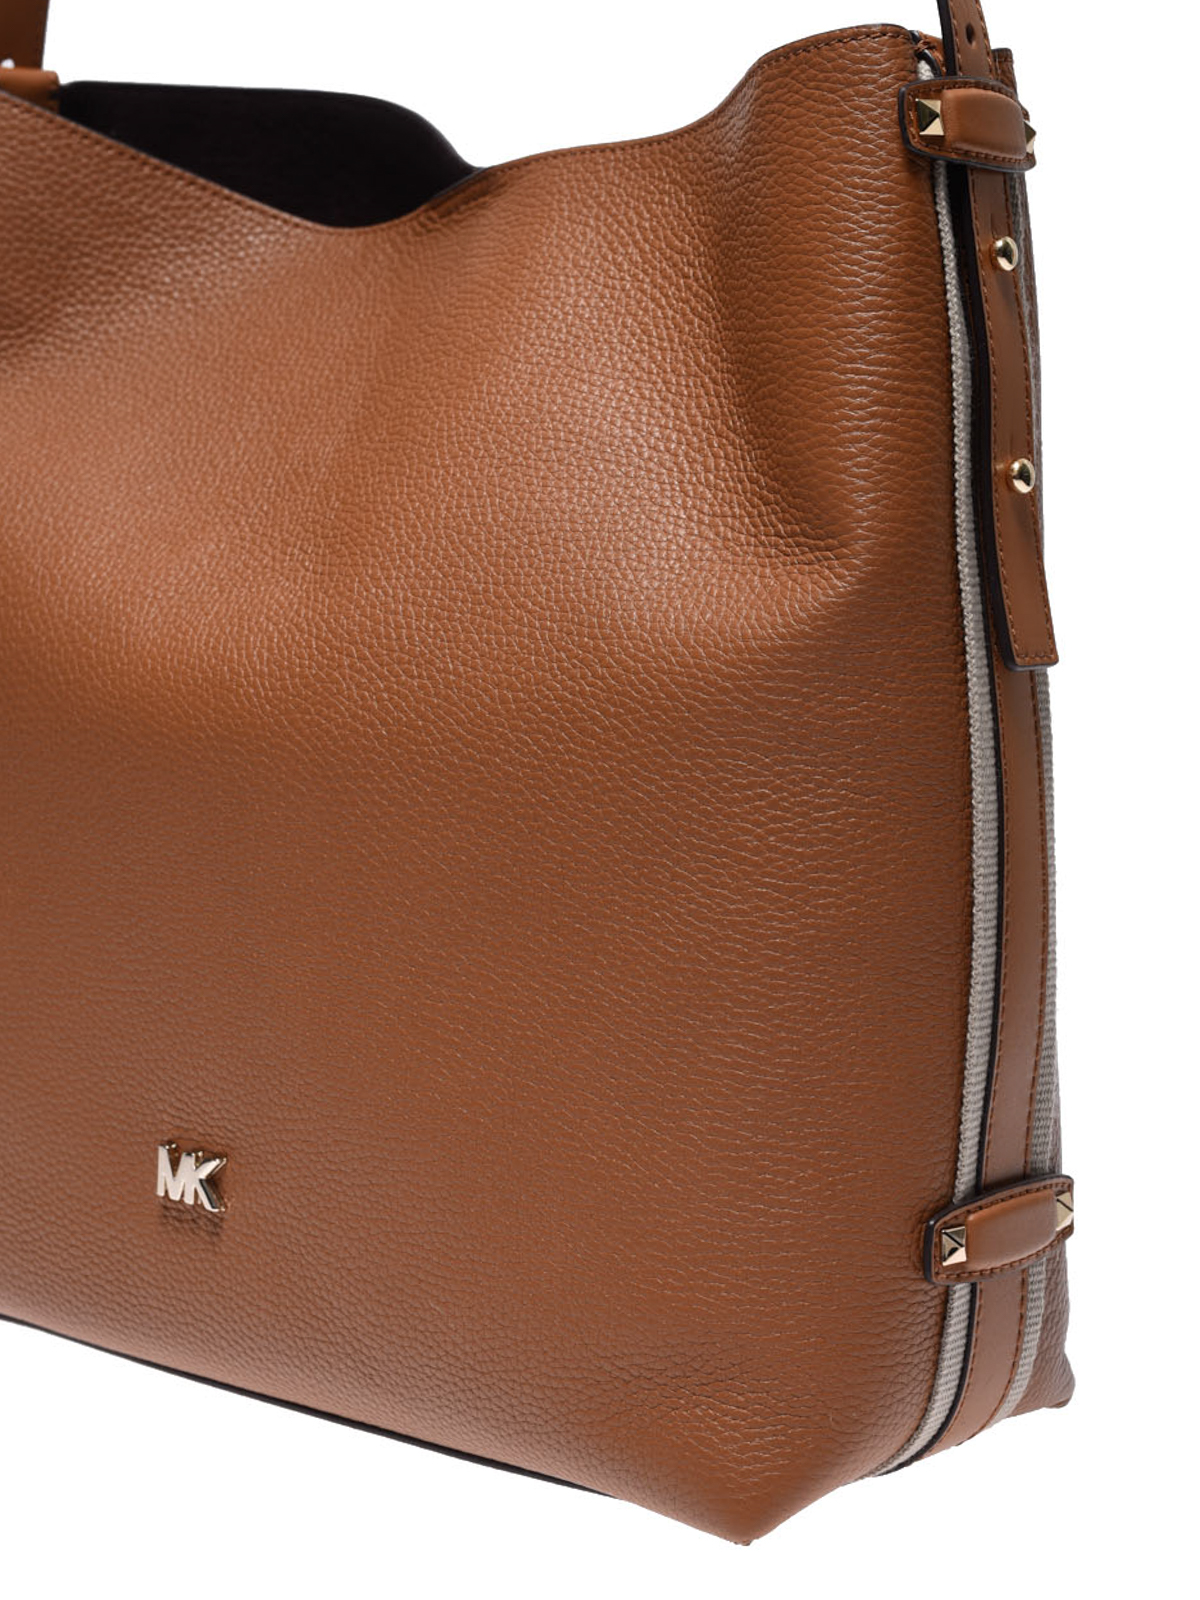 michael kors griffin large leather shoulder bag